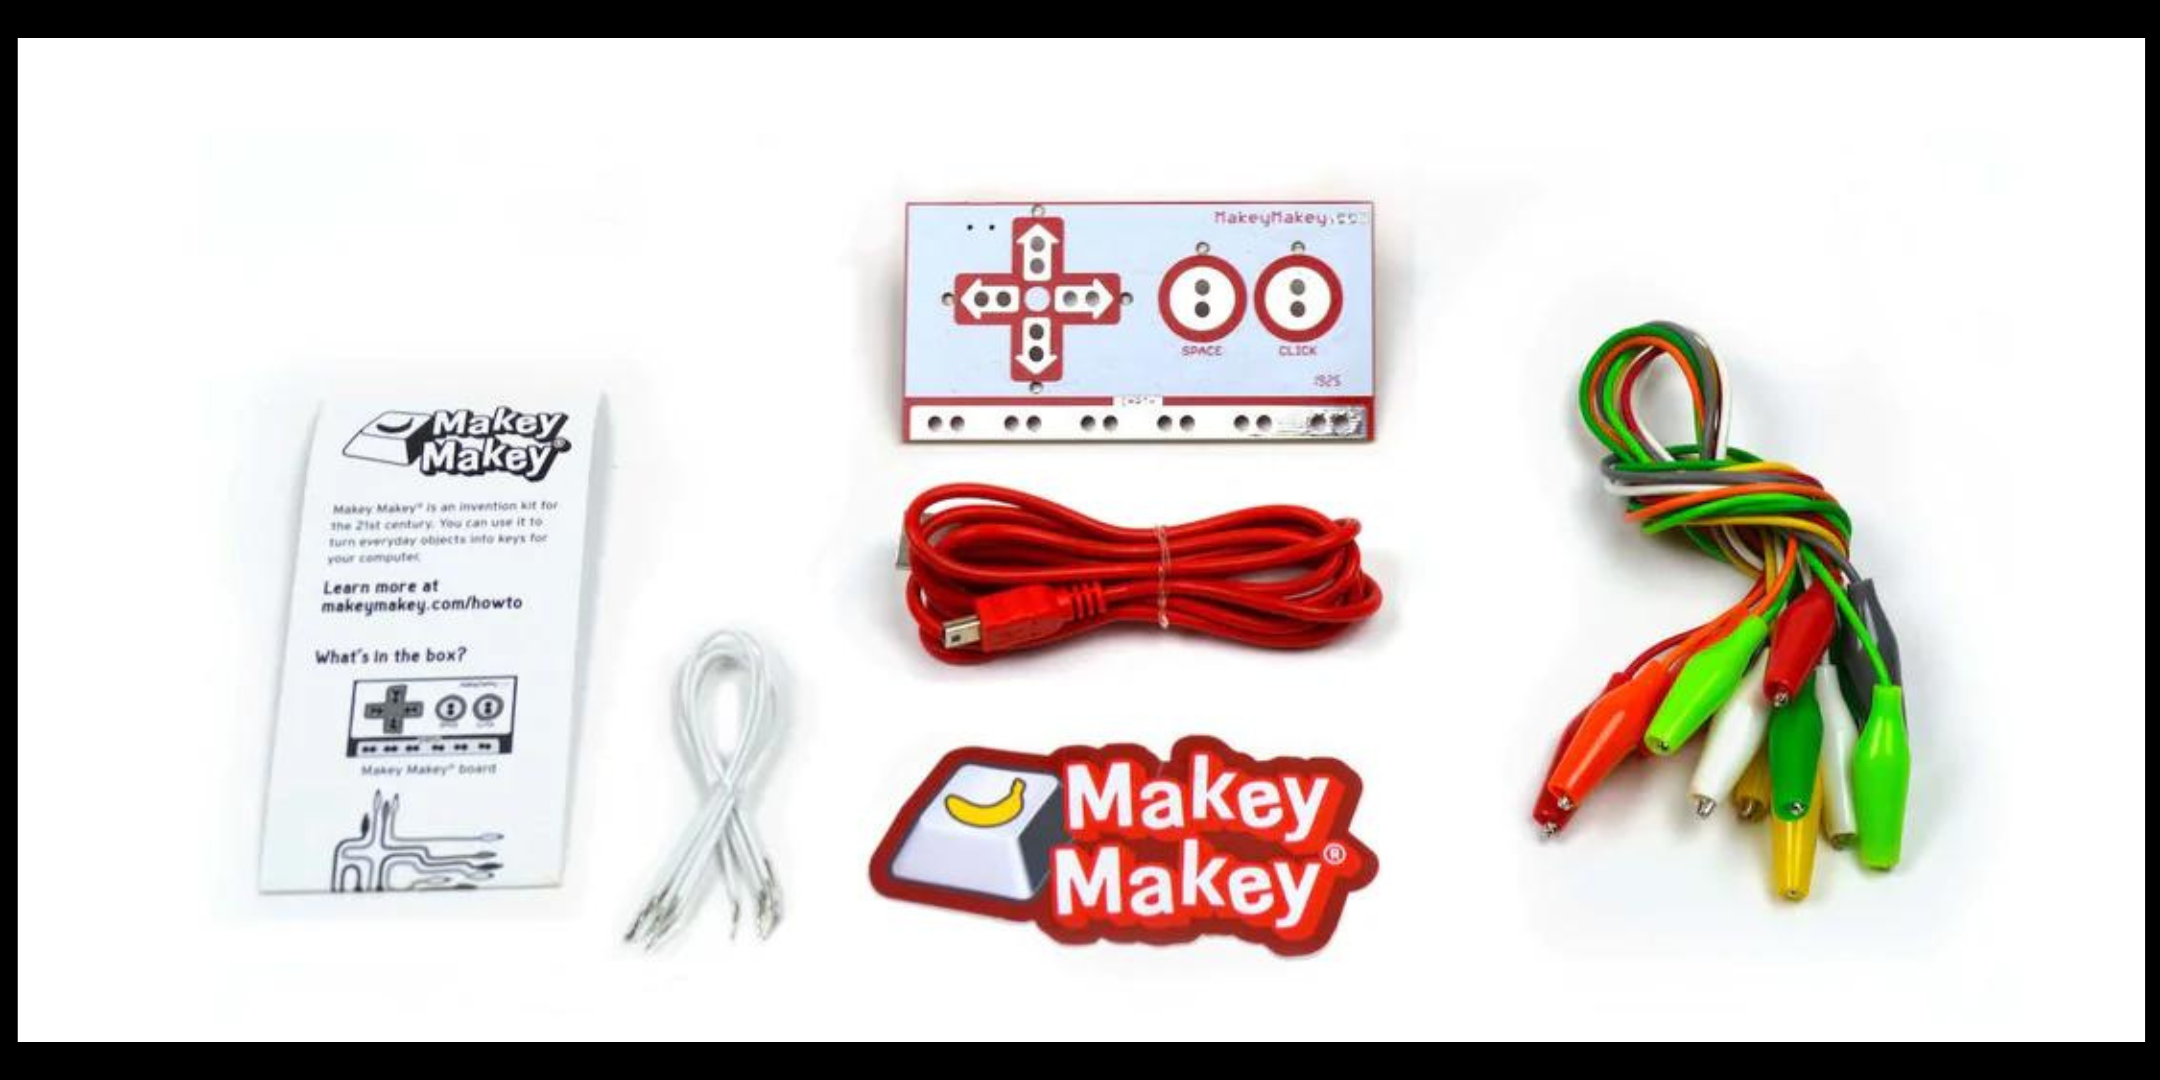 Make-It-Workshop: Makey Makey